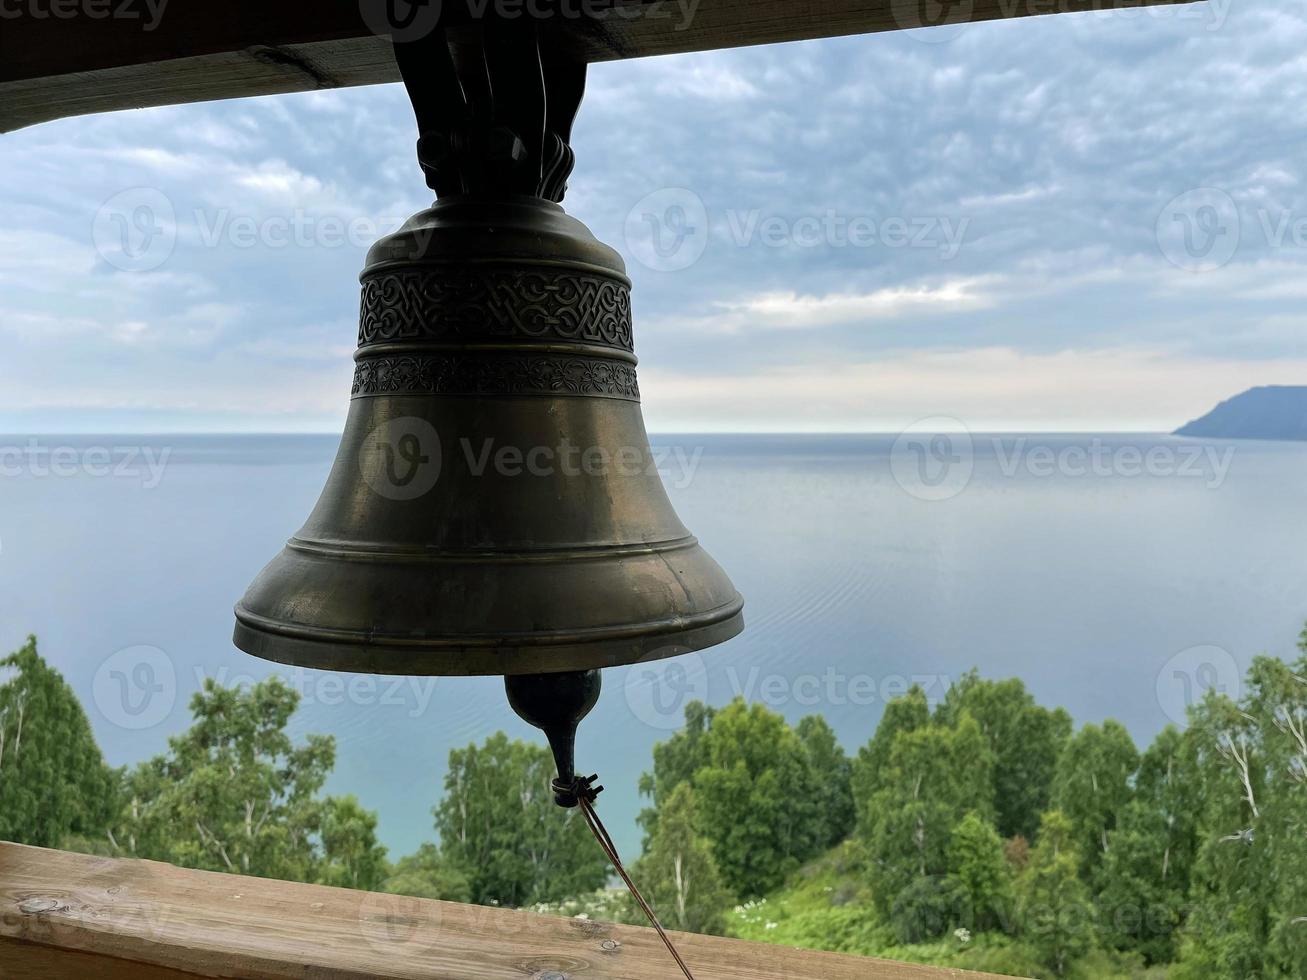 campana en el campanario de un cristiano Iglesia en contra el fondo de lago Baikal, Rusia foto